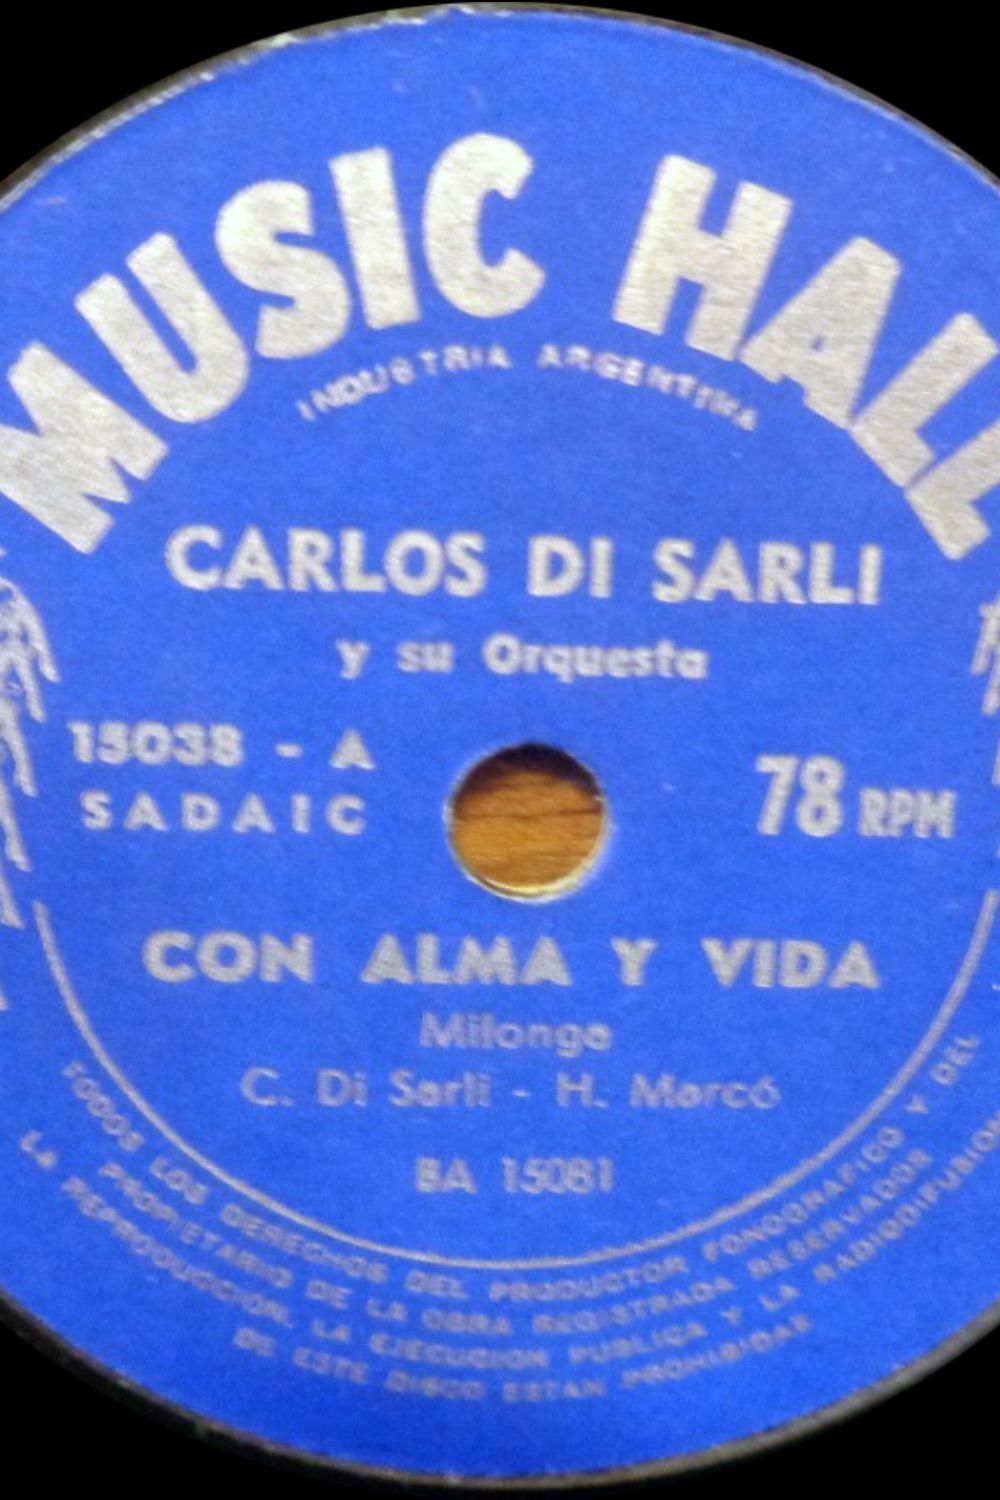 'Con alma y vida', Argentine Tango music vinyl disc.